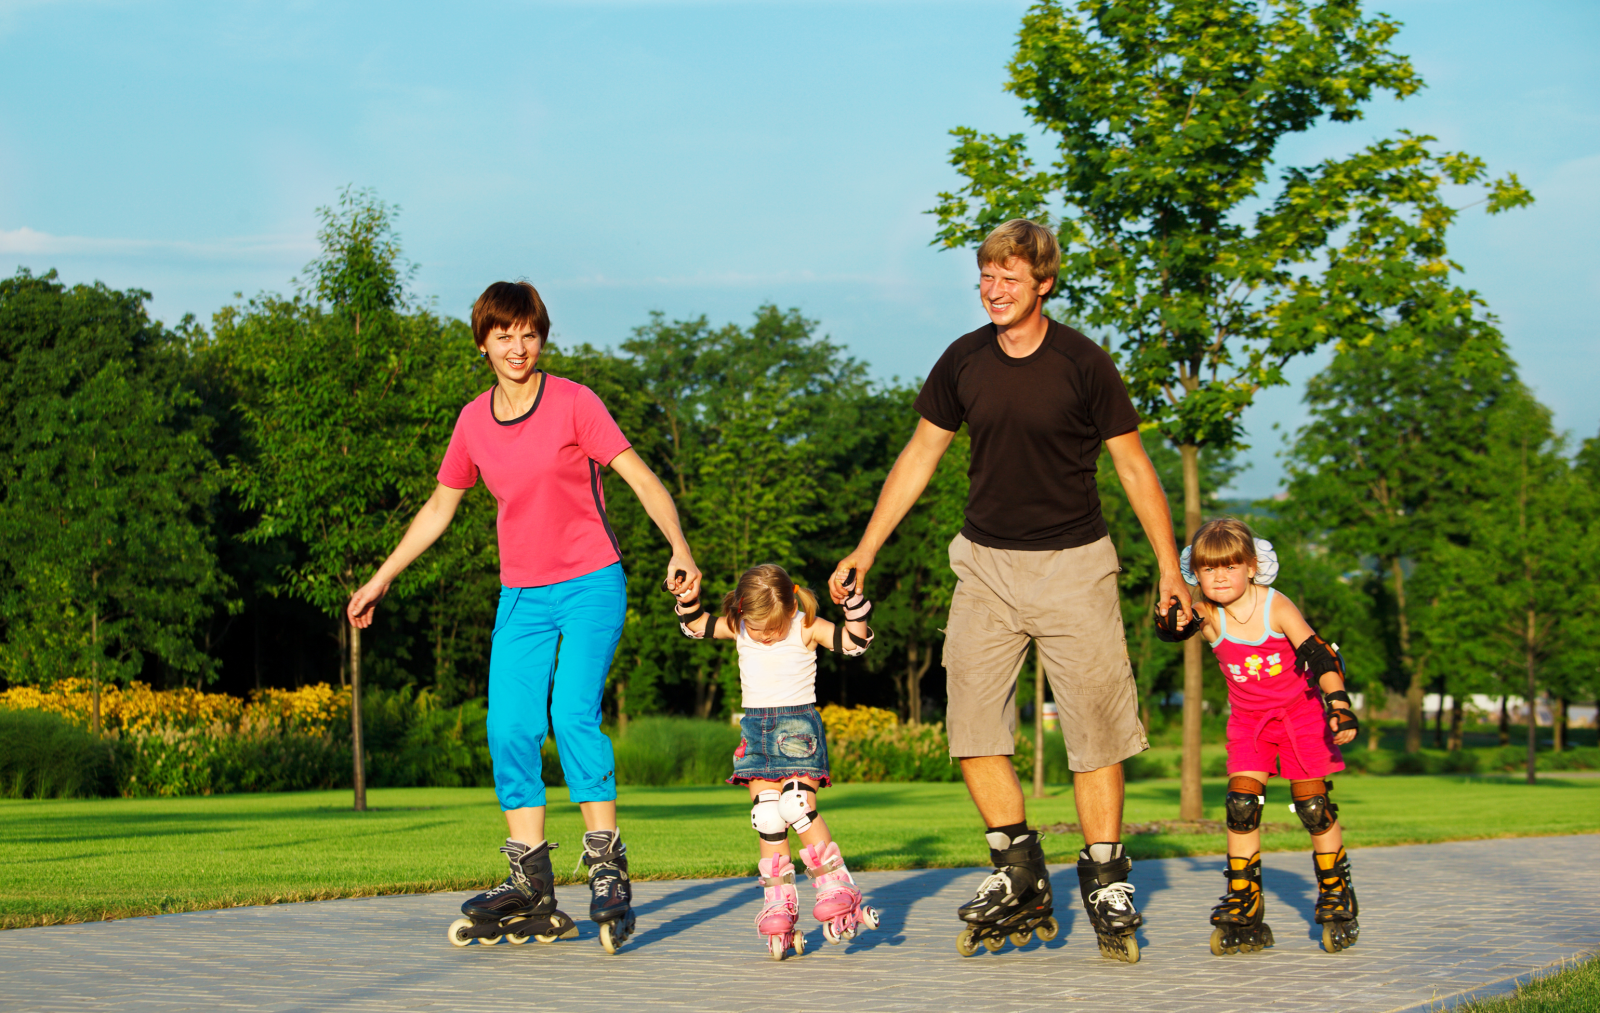 Мама дает ролики. Семья занимается спортом. Семья на роликовых коньках. Катание на роликах. Дети спорт семья.